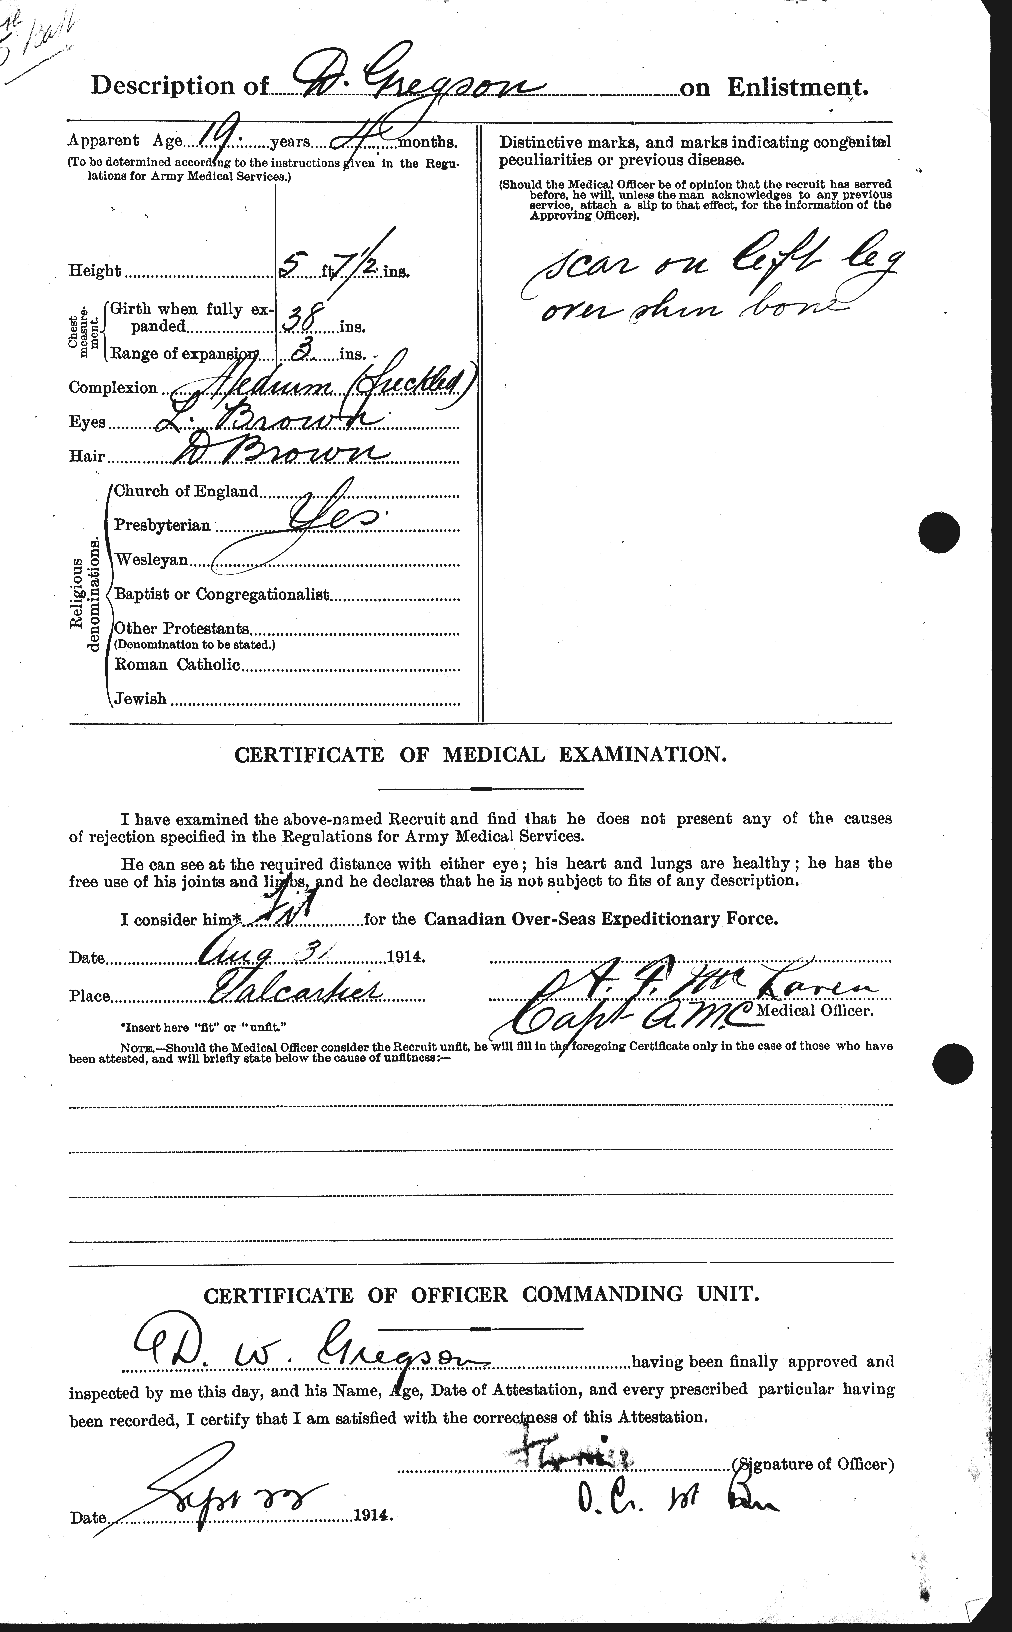 Dossiers du Personnel de la Première Guerre mondiale - CEC 363098b